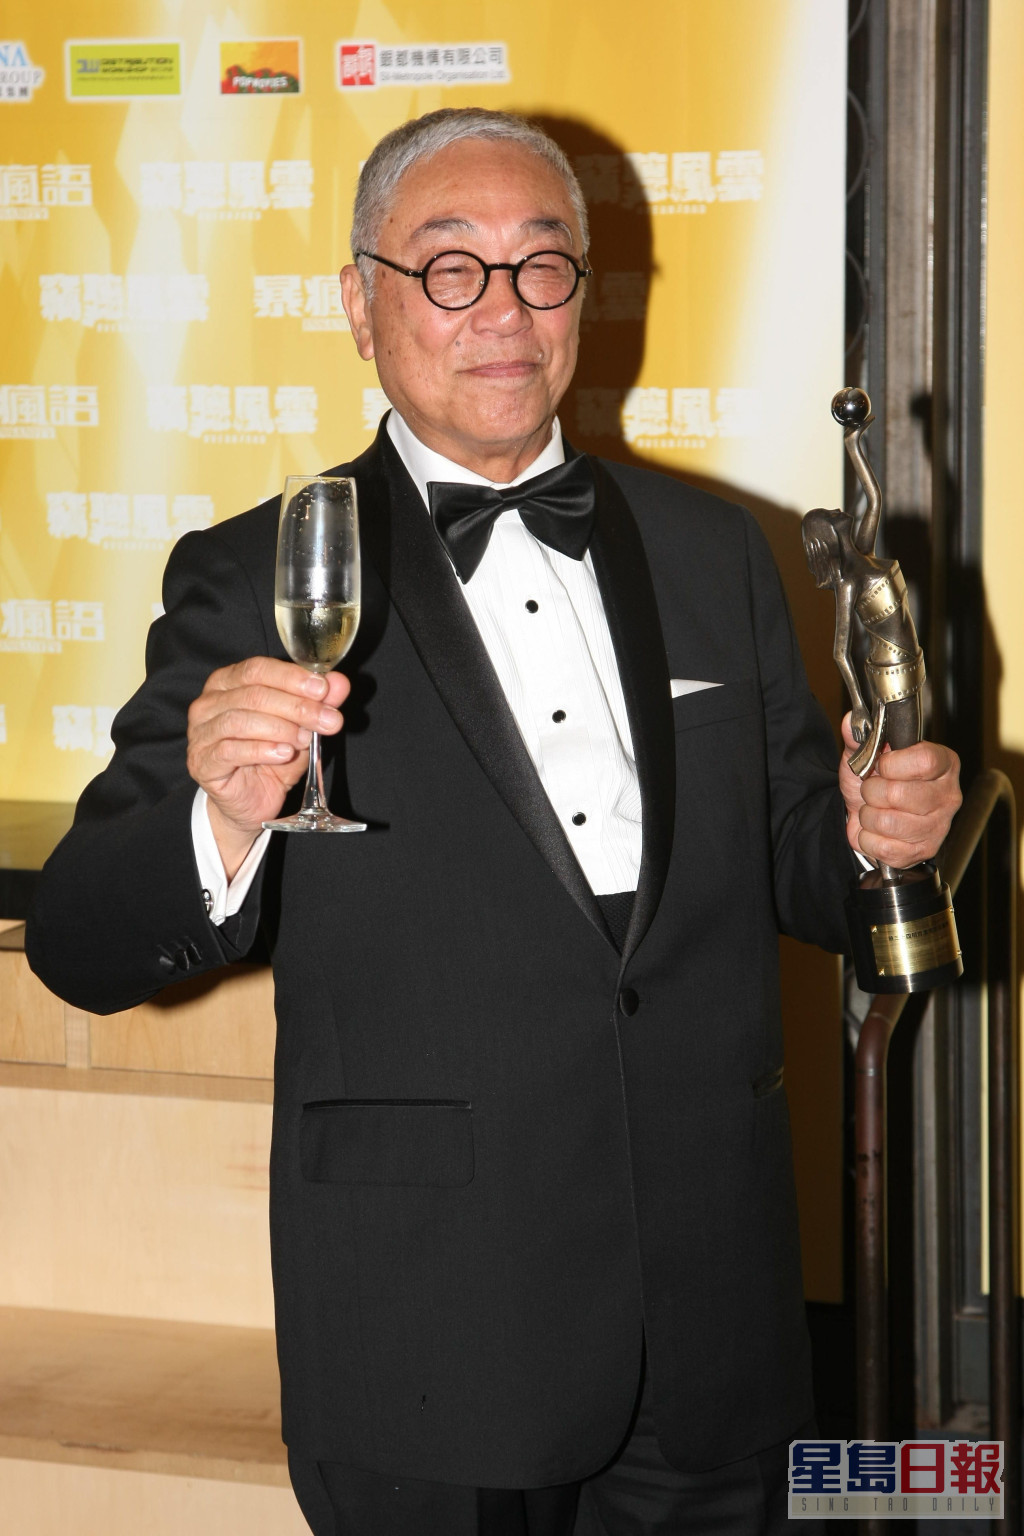 曾江凭《窃听风云3》夺得第34届香港电影金像奖「最佳男配角」。